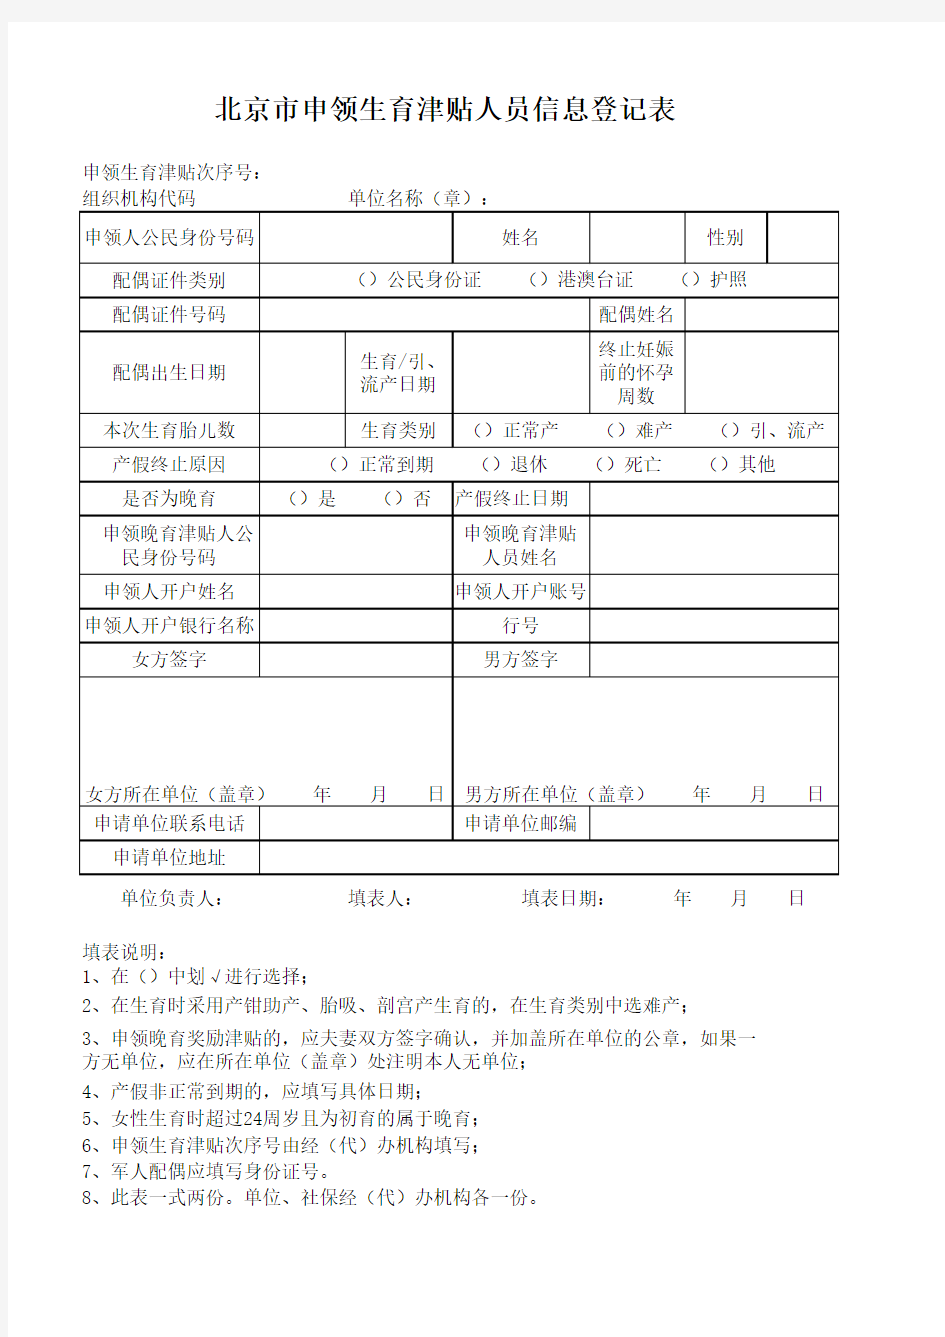 北京市申领生育津贴人员信息登记表2016年最新版